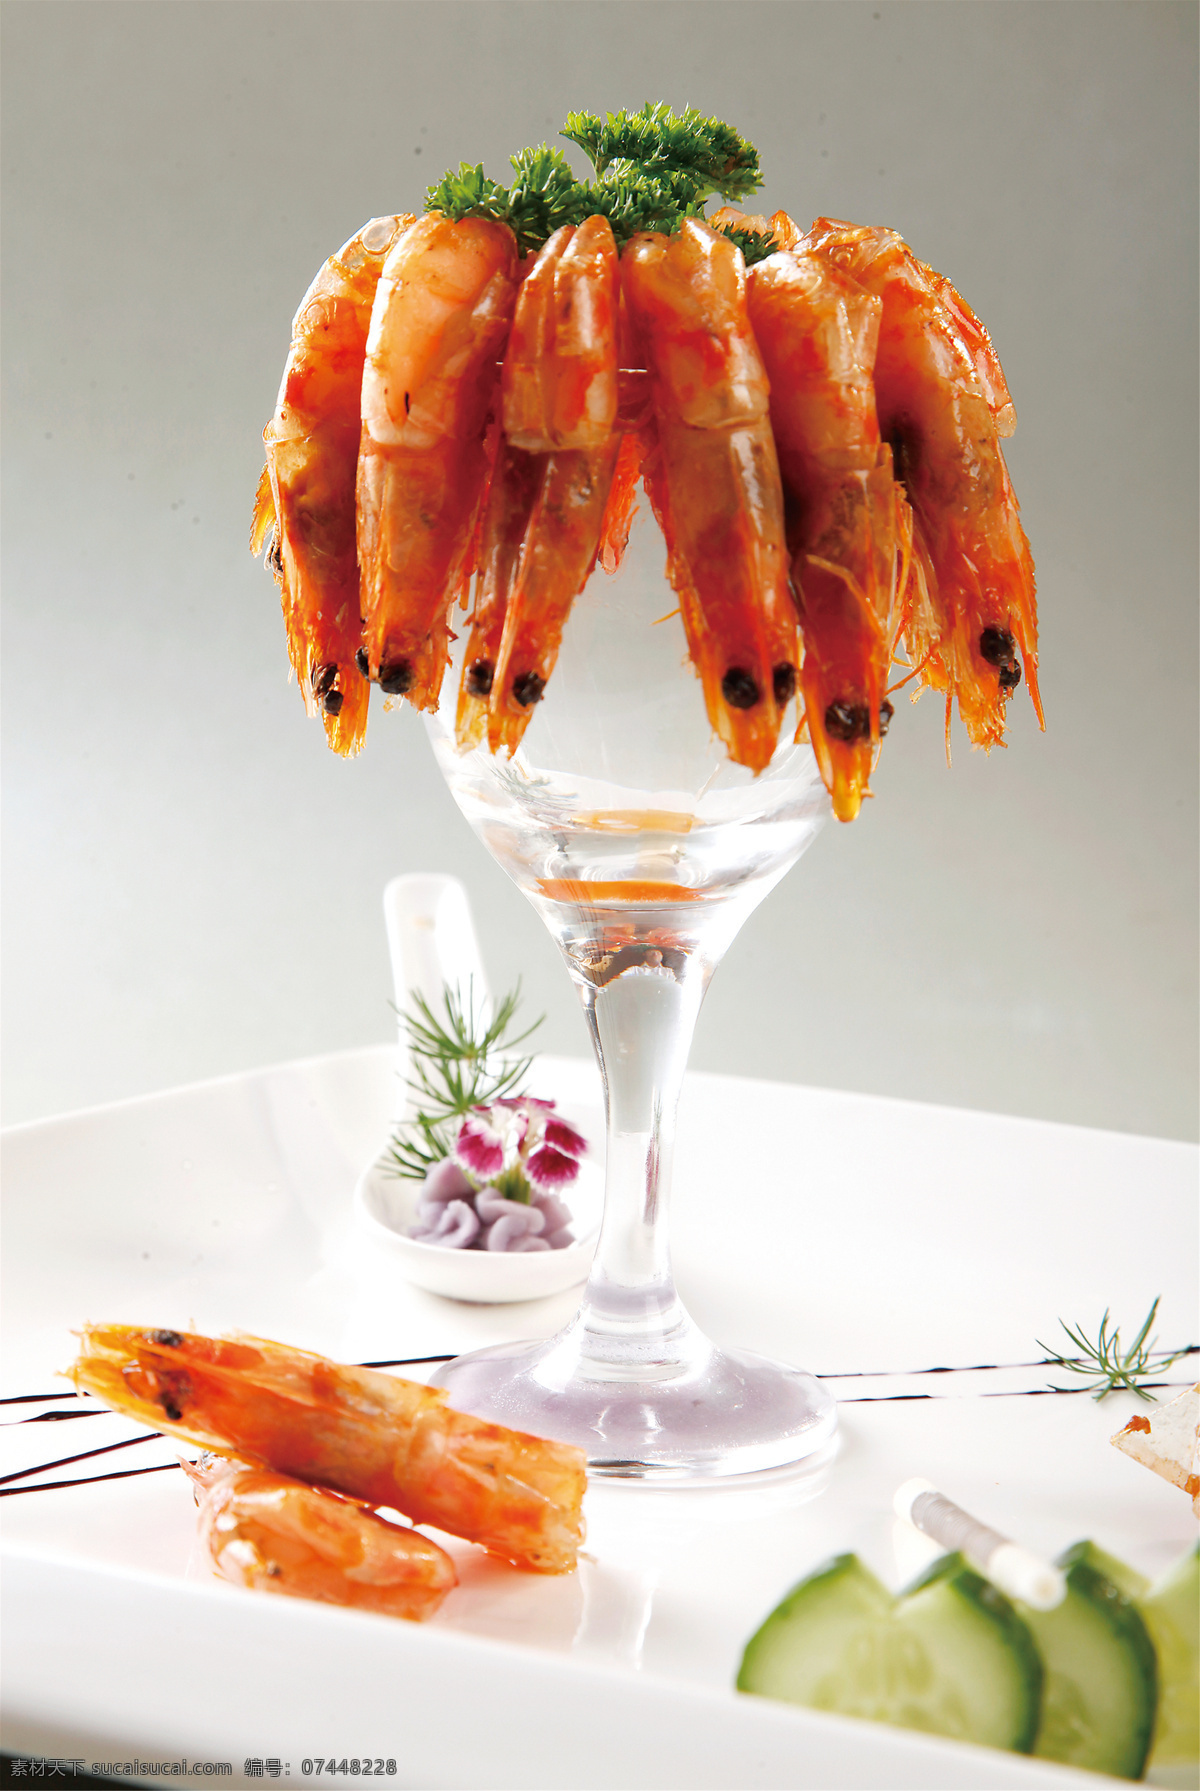 美味 烤 虾干 美味烤虾干 美食 传统美食 餐饮美食 高清菜谱用图